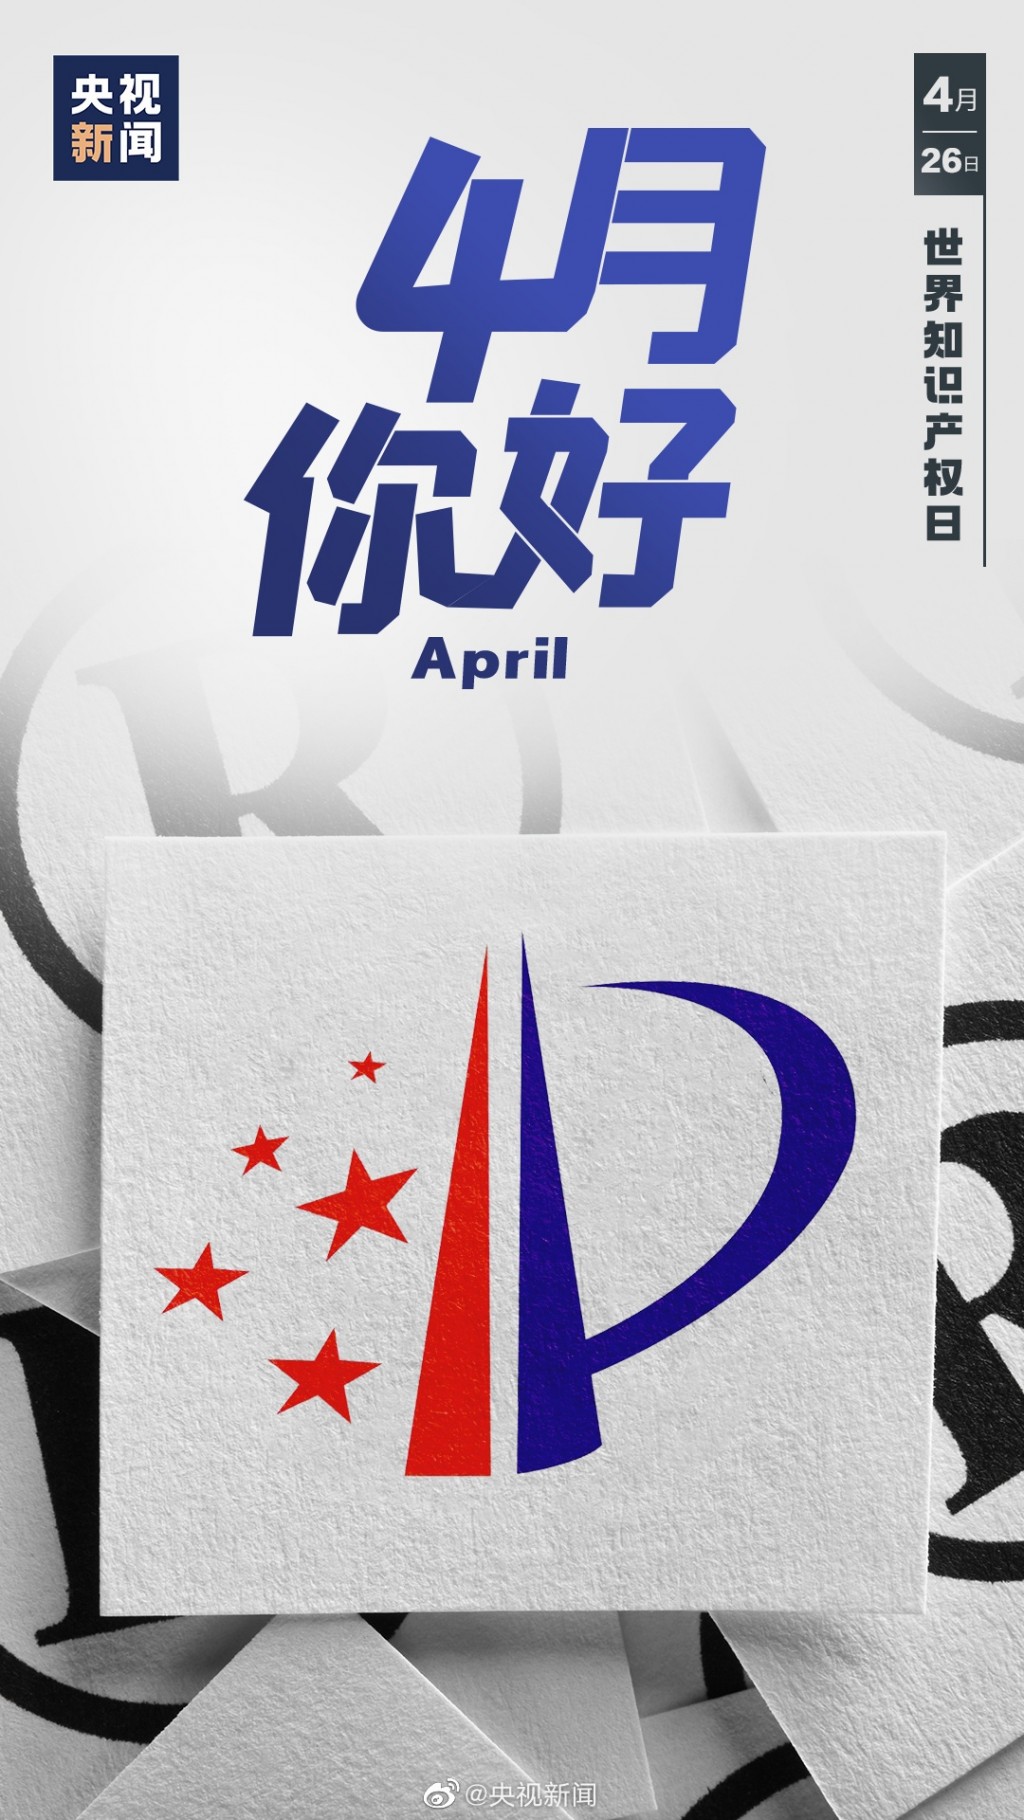 4月你好祝福文字节日手机壁纸